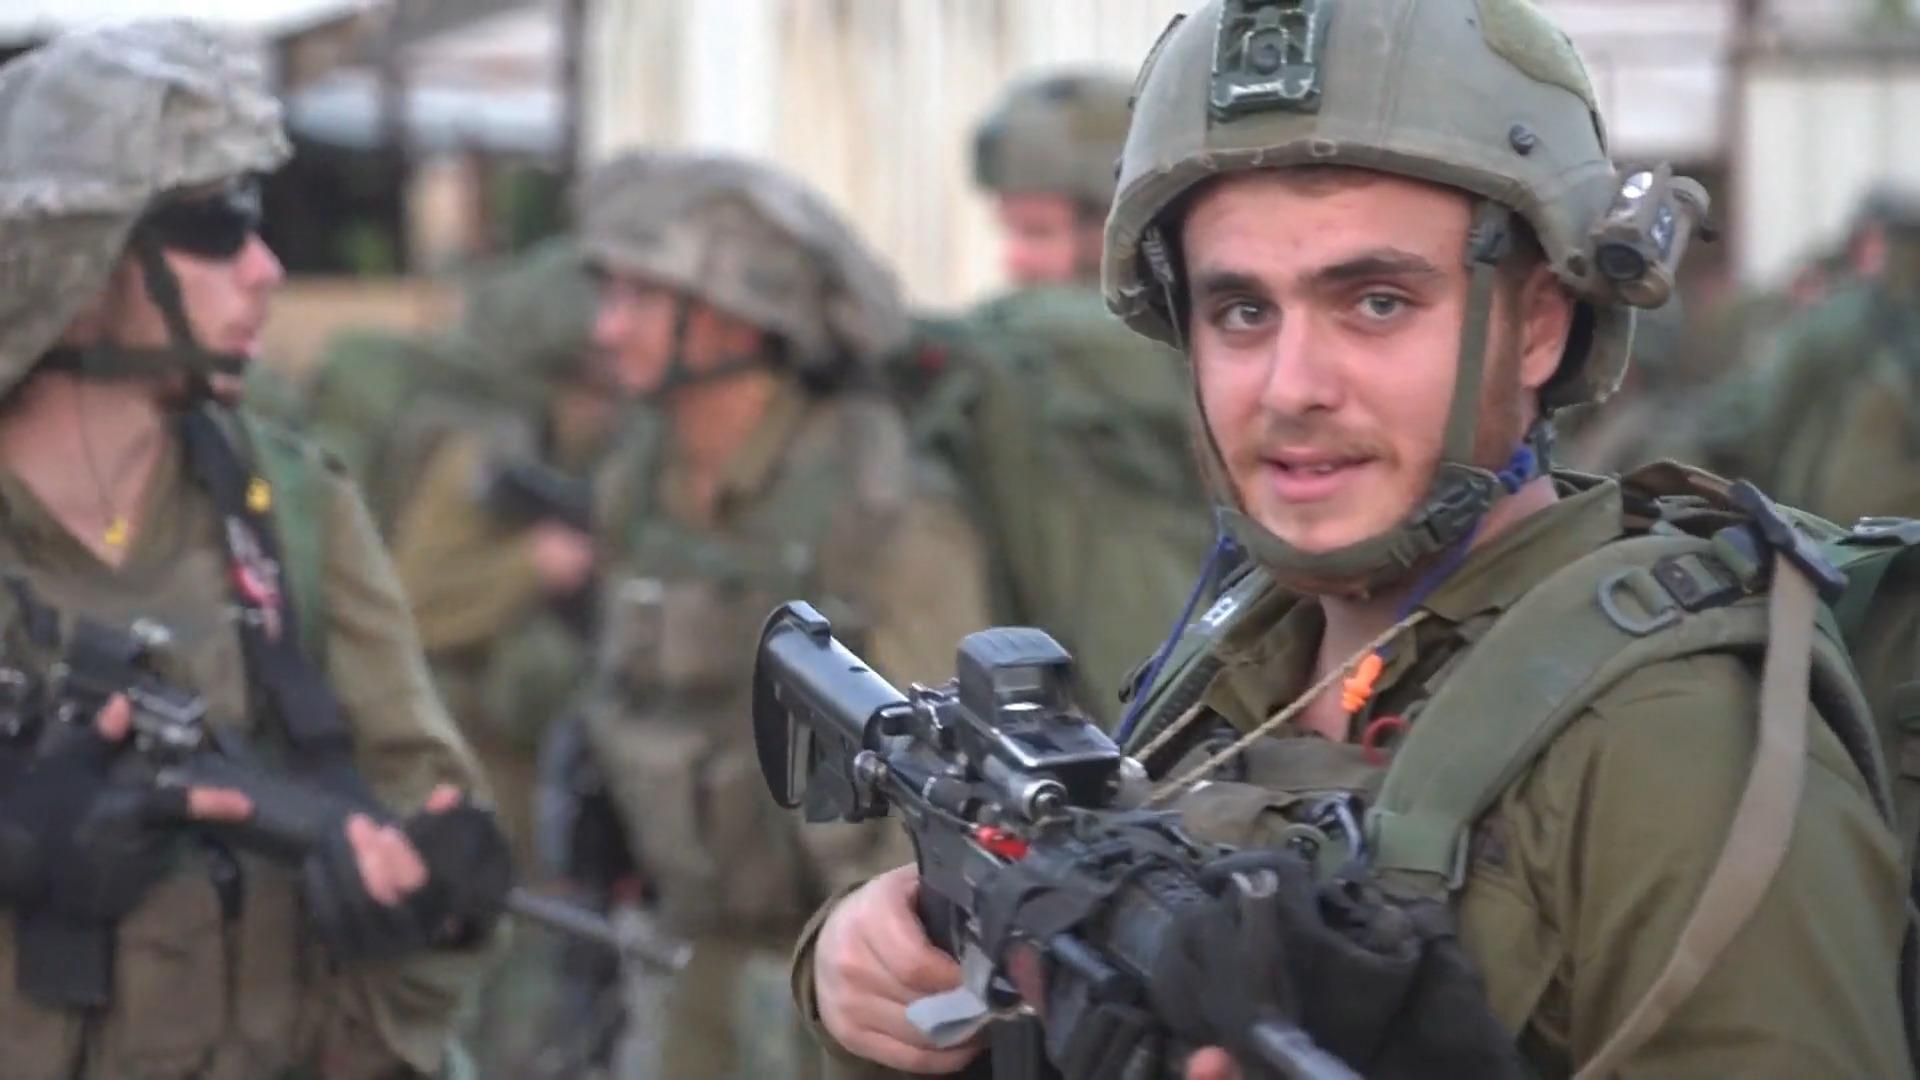 Israele si sta preparando per un attacco di terra. Quanto sarà dura la risposta militare israeliana?